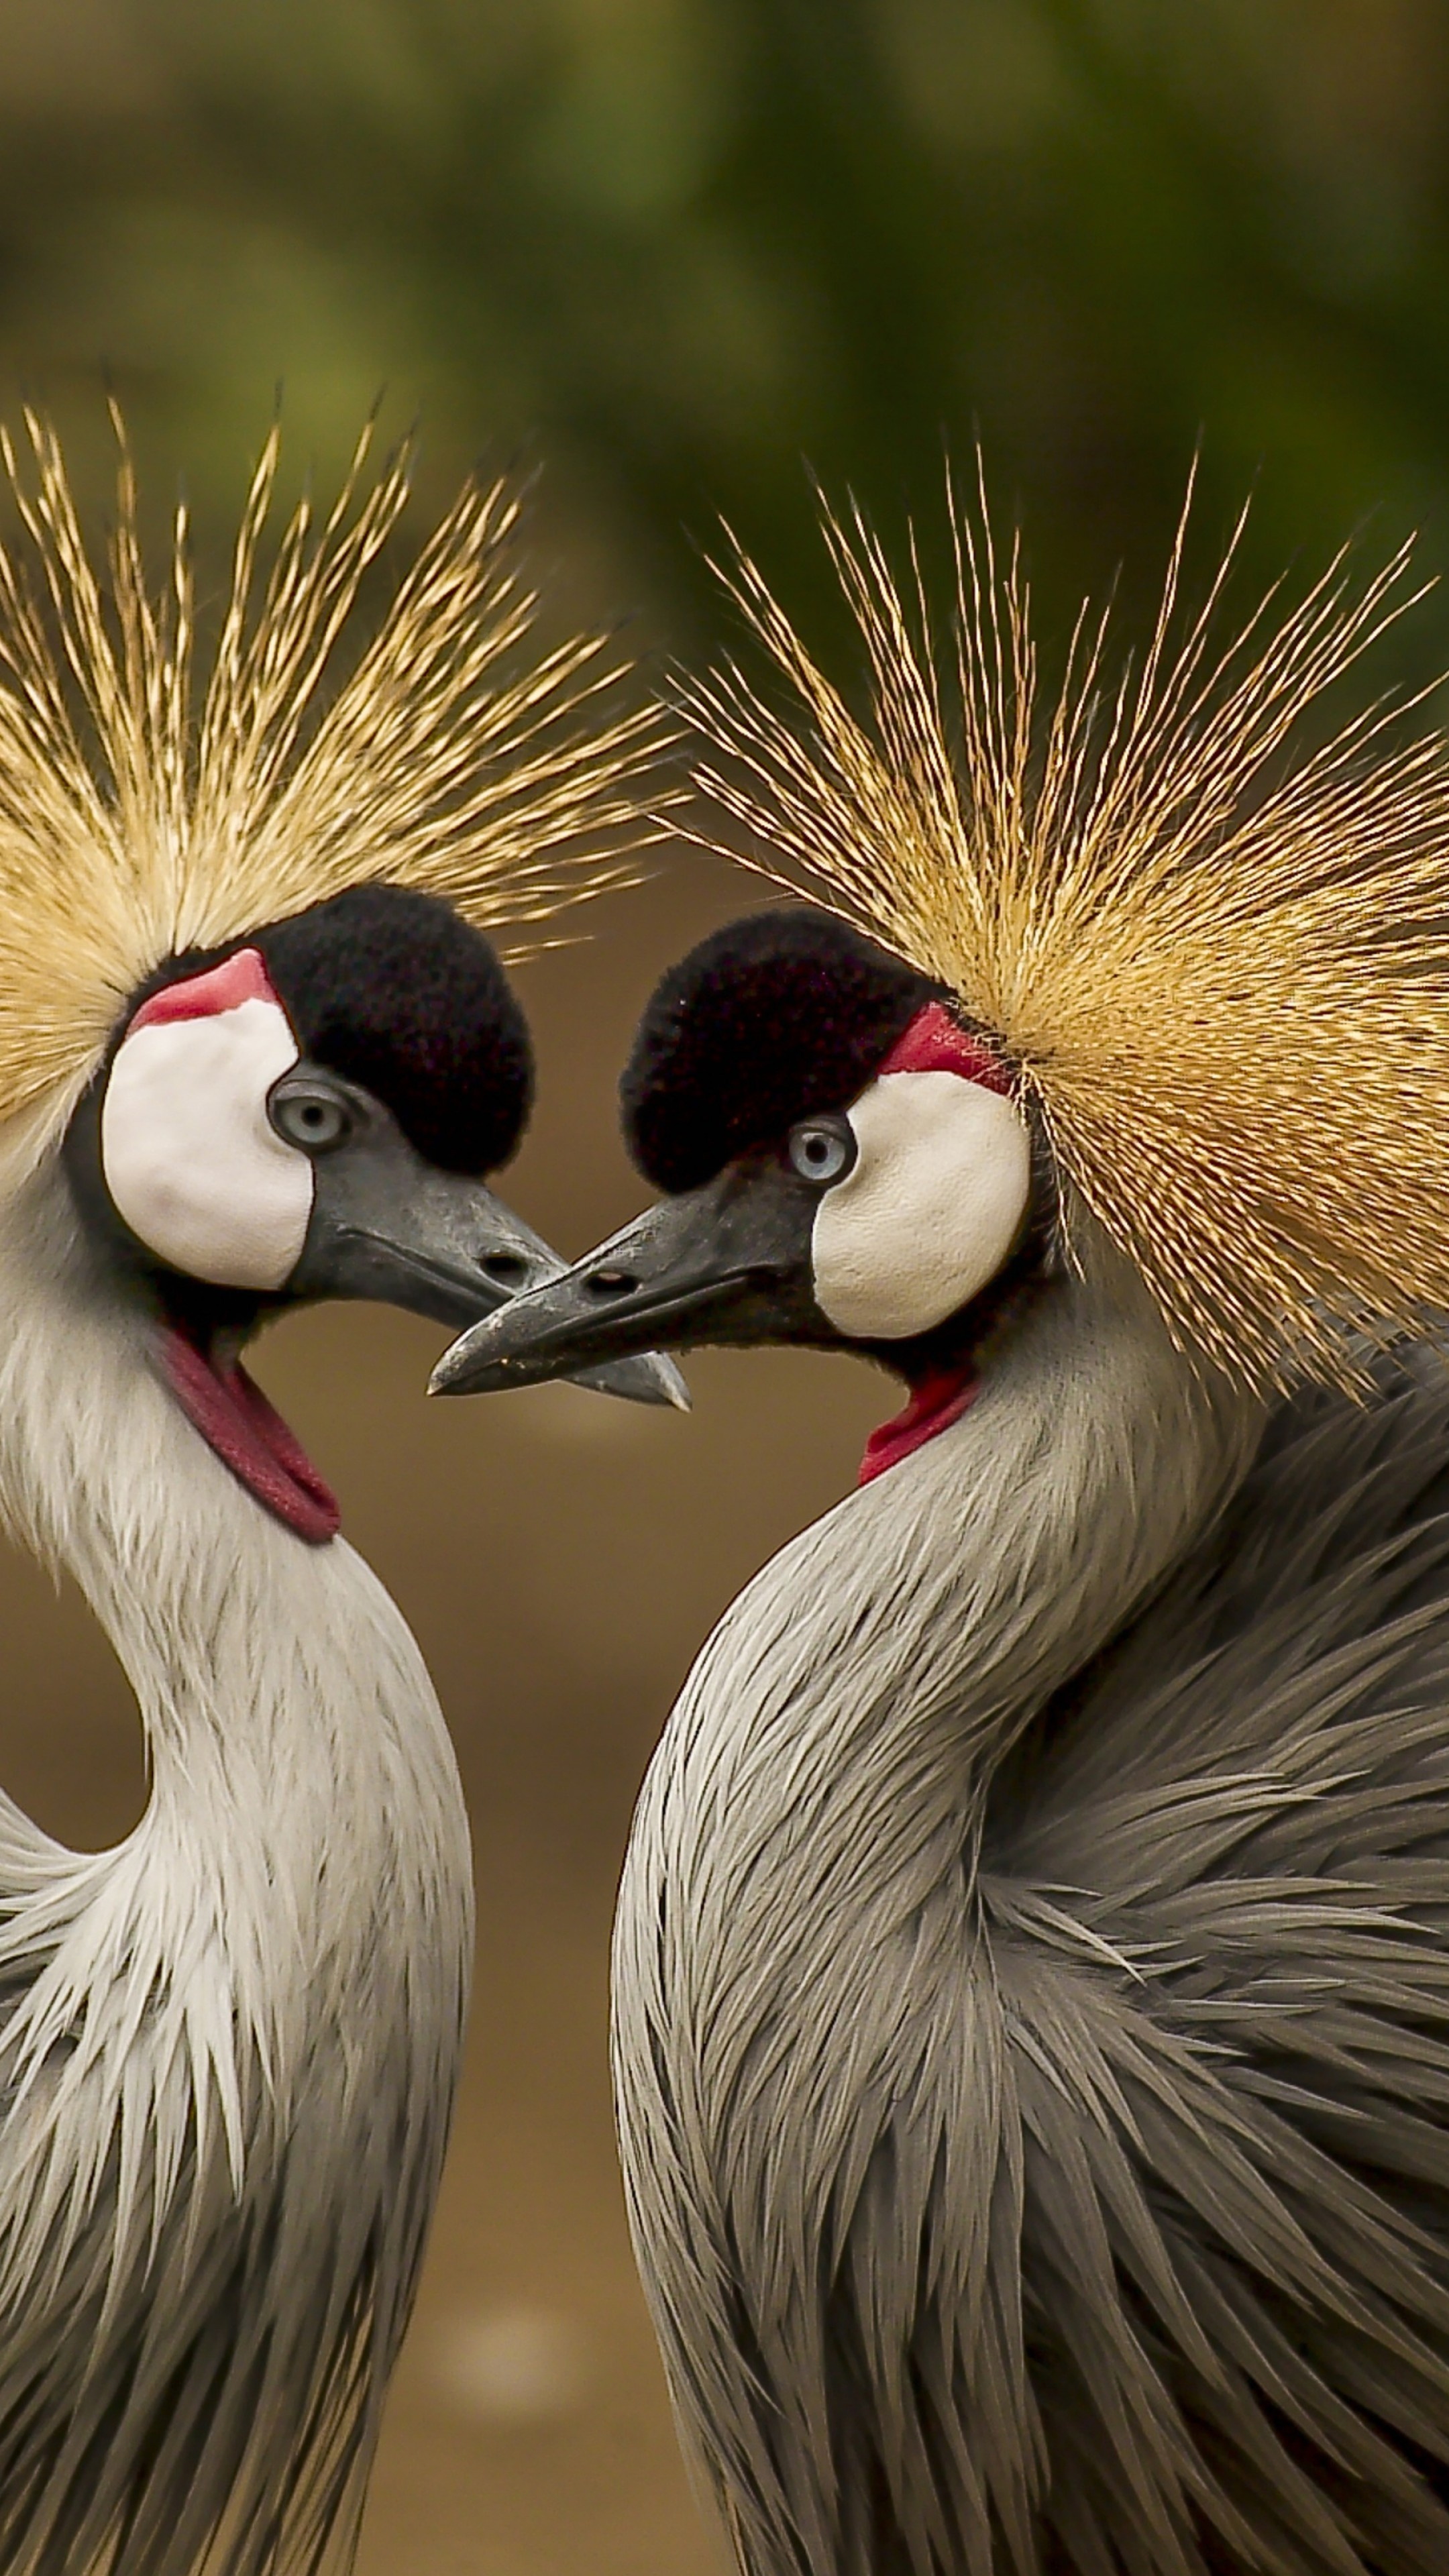 Crowned crane bird wallpaper, HD animals, Wildlife photography, Exquisite avian, 2160x3840 4K Phone